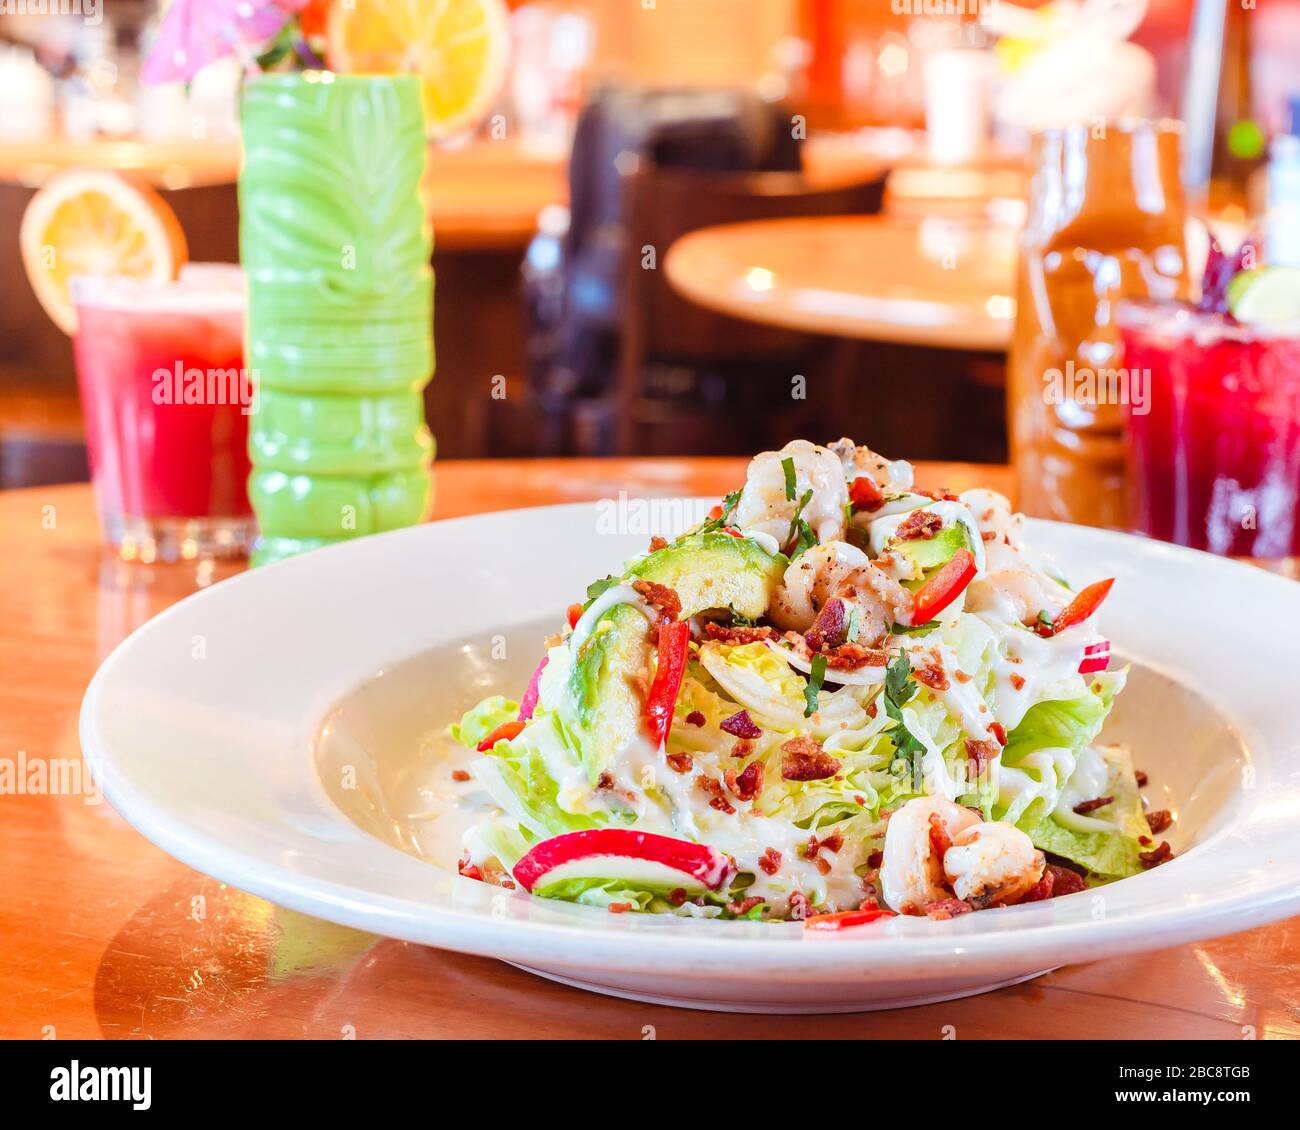 Schmackhafter traditioneller mexikanischer Salat mit Dressing und rotem Pfeffer auf einer hellbraunen Holzoberfläche in einem traditionellen mexikanischen Restaurant, das von tra umgeben ist Stockfoto